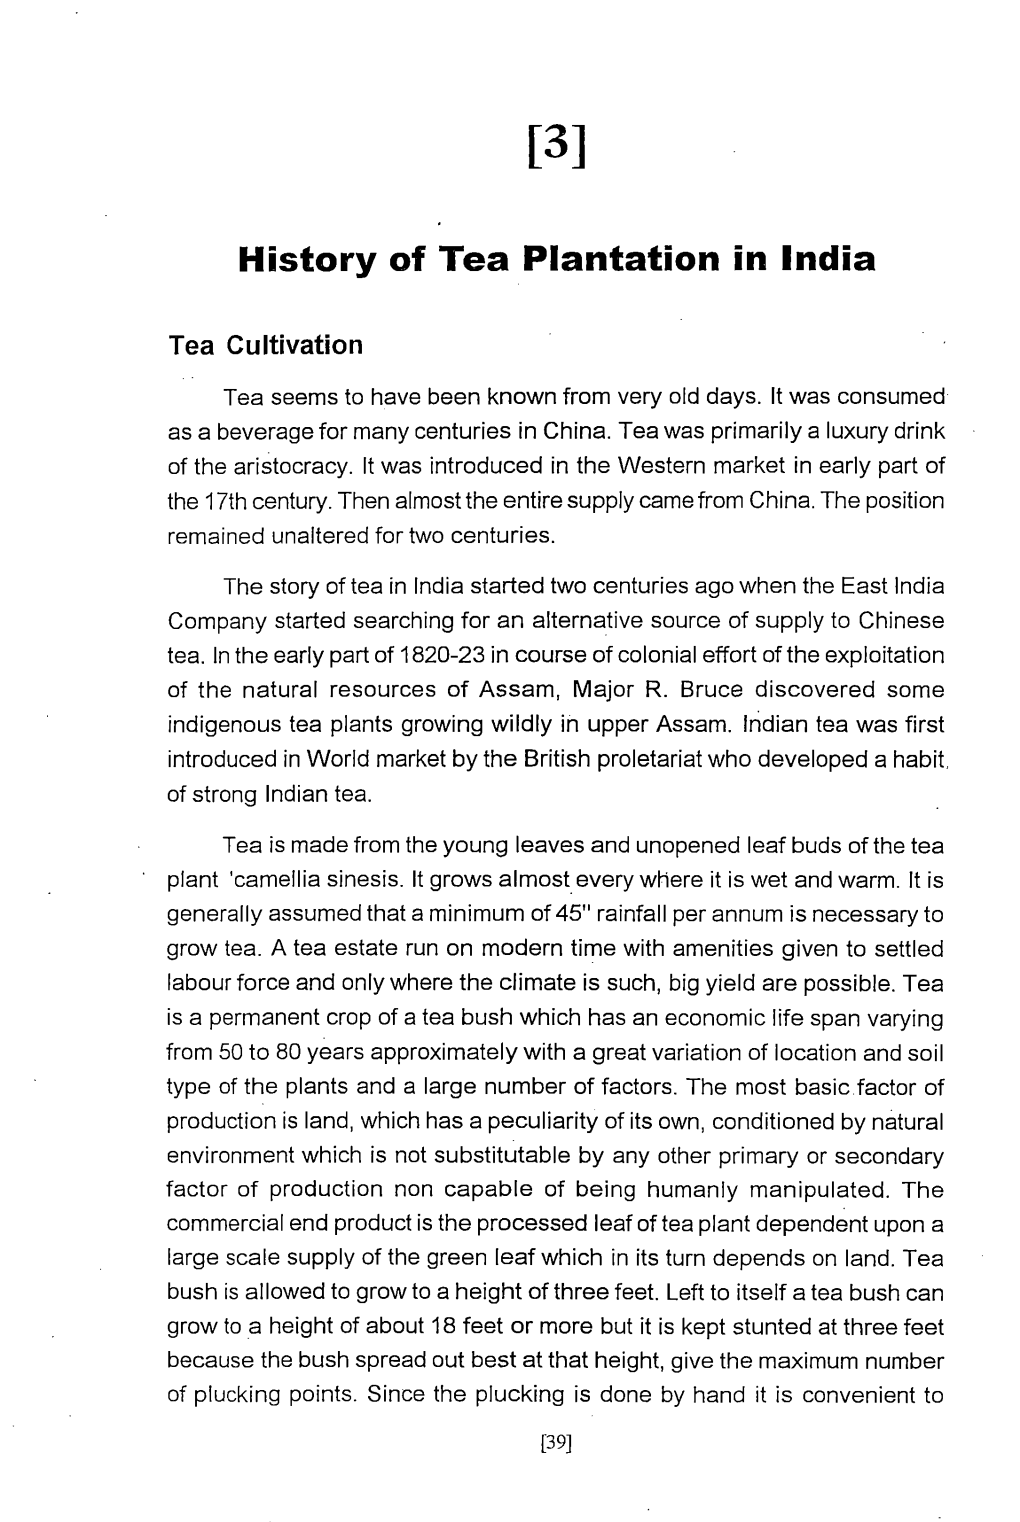 History of Tea Plantation in India